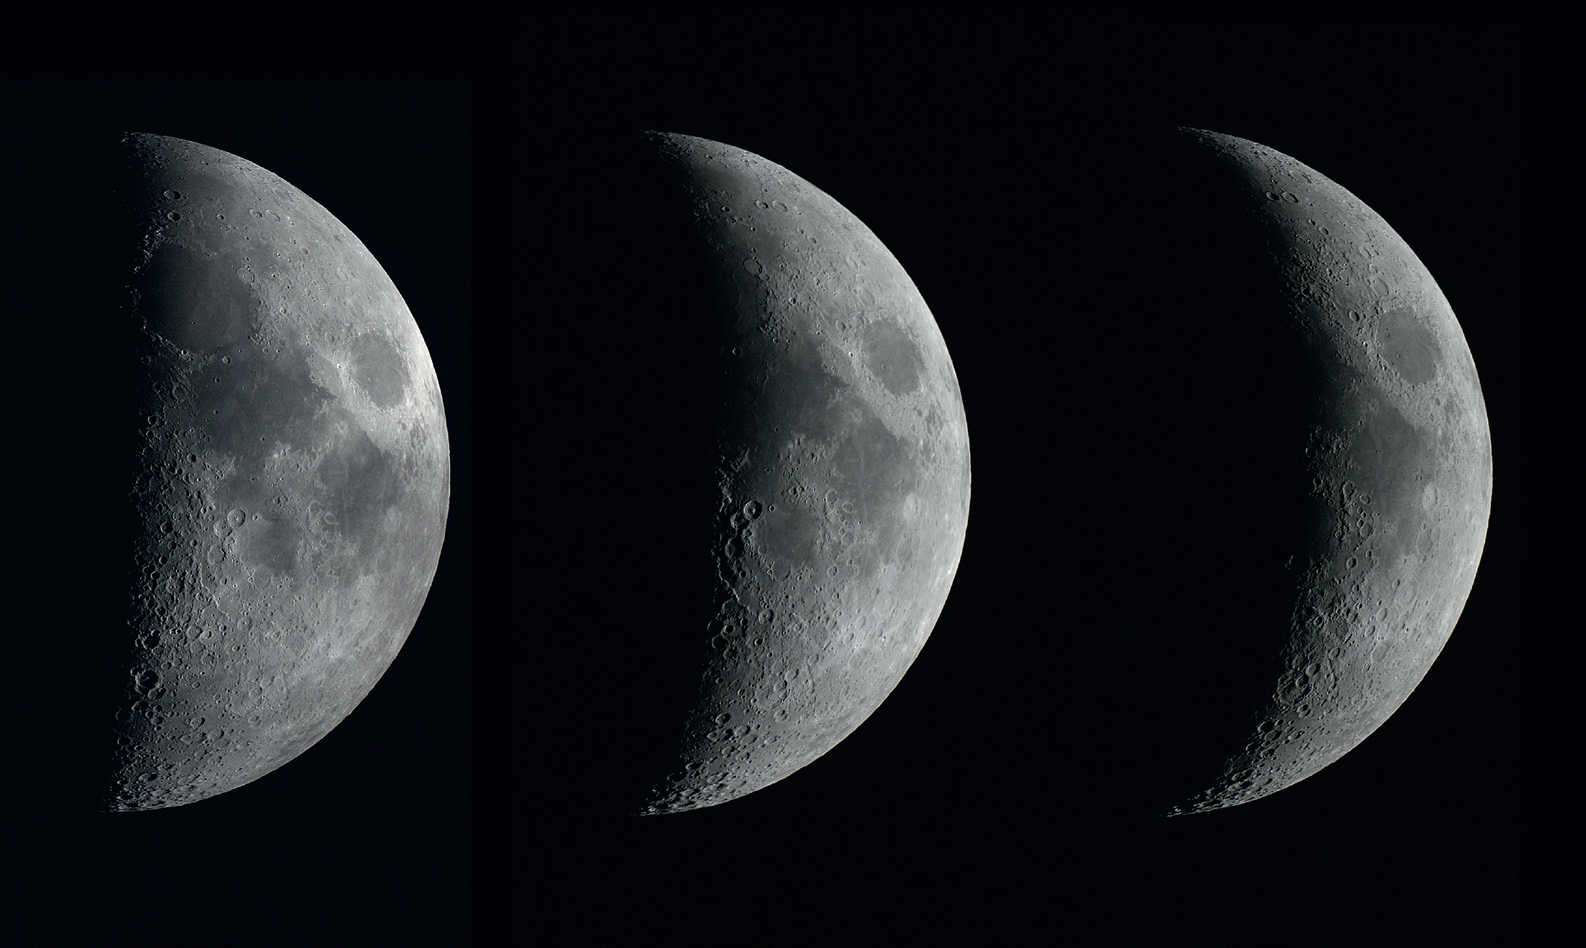 Die Phasen des zunehmenden Mondes an drei aufeinanderfolgenden Tagen. Die Aufnahmen
entstanden mit einer DSLR vom Typ Canon 450D an einem Refraktor mit 102mm Öffnung
und 1.000mm Brennweite im Abstand von jeweils einem Tag. U. Dittler